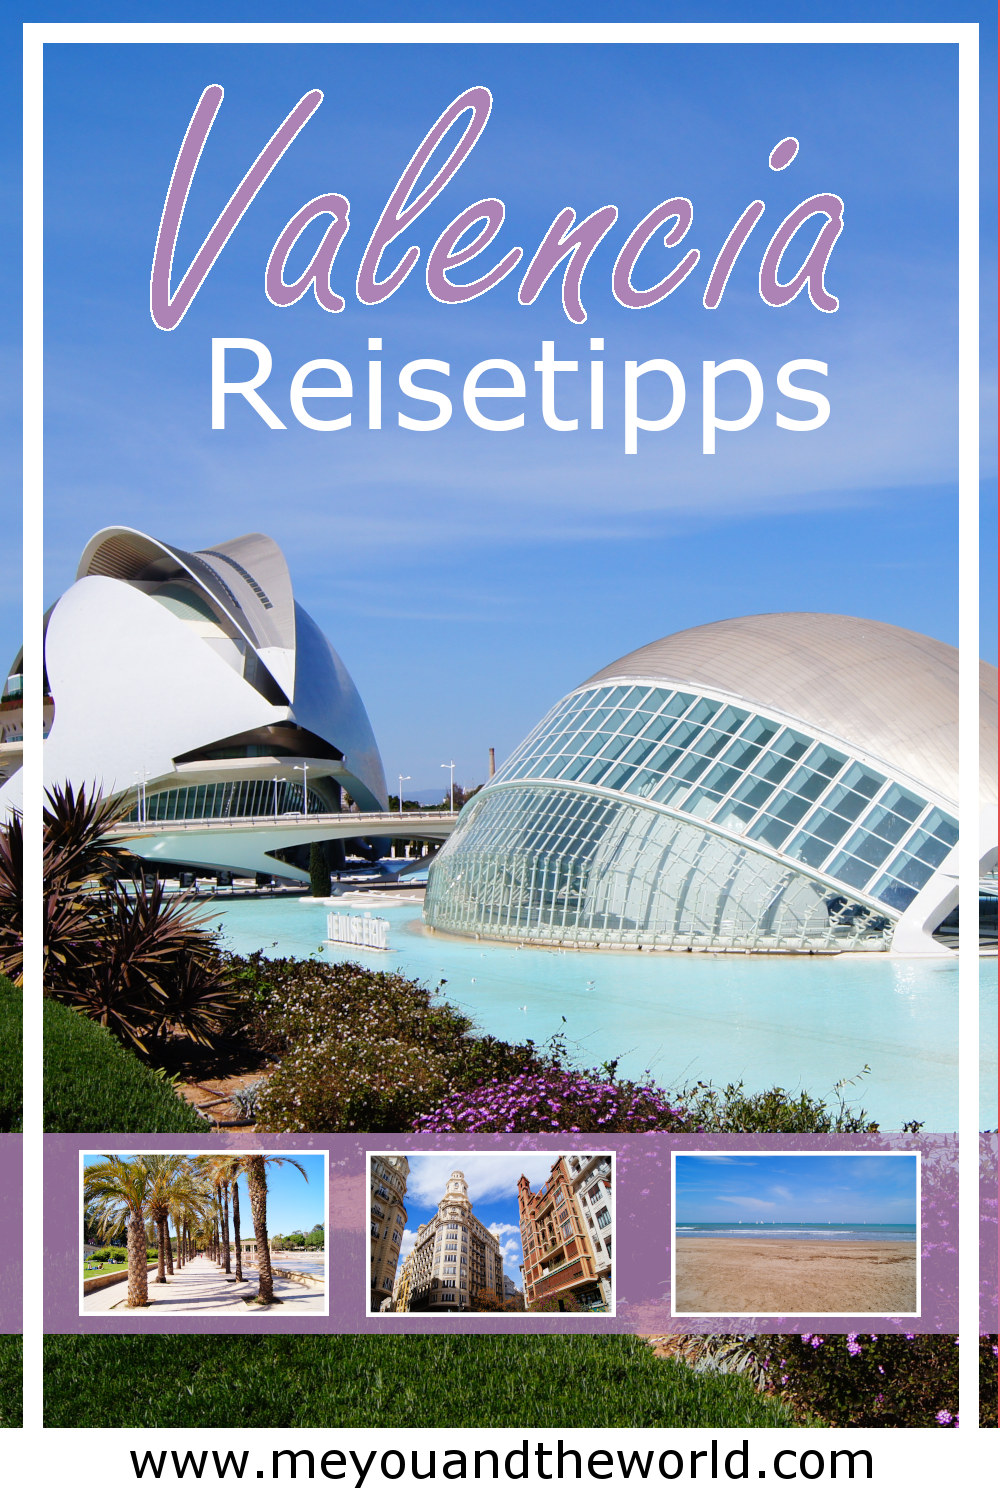 Die besten Valencia Tipps findest du in meinem Valencia Reise Guide